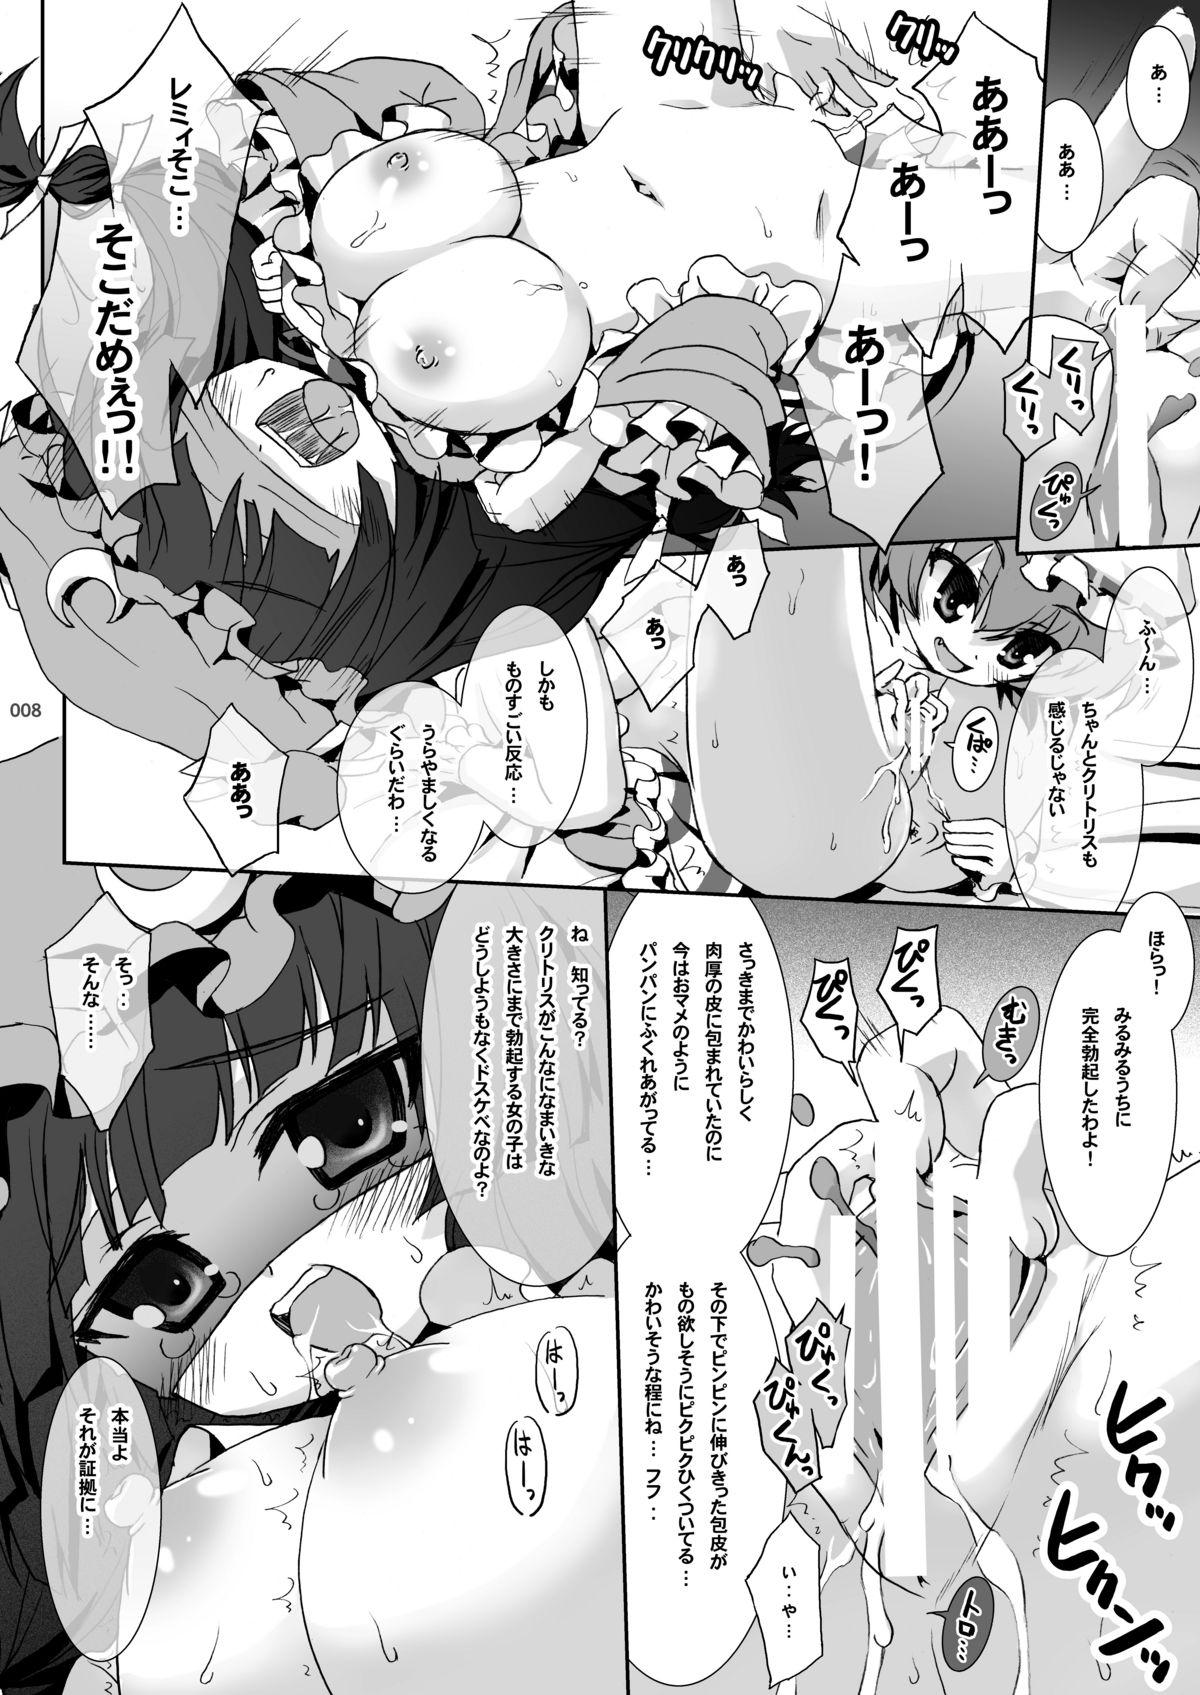 Puba Patchouli no Himitsu no Jikan - Touhou project Weird - Page 7